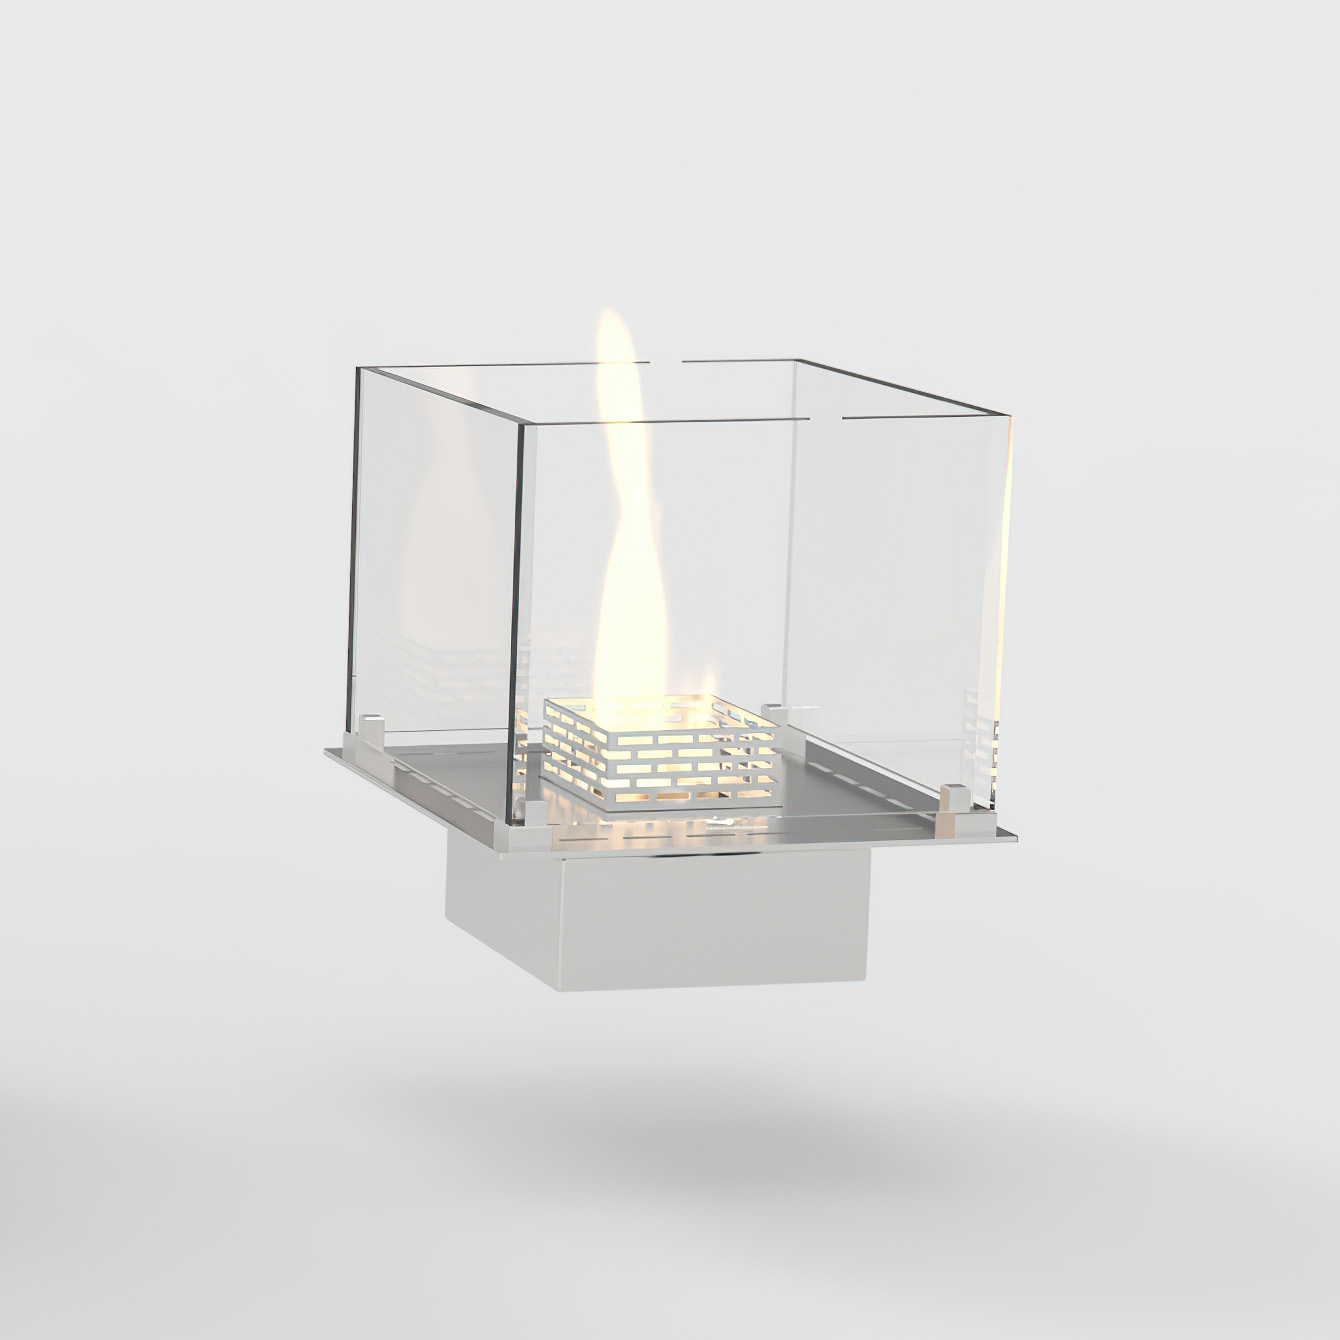 Built-in Lounge (N) - Quadratischer DECOFLAME Einbaubrenner mit Glasfassung | Radiamo